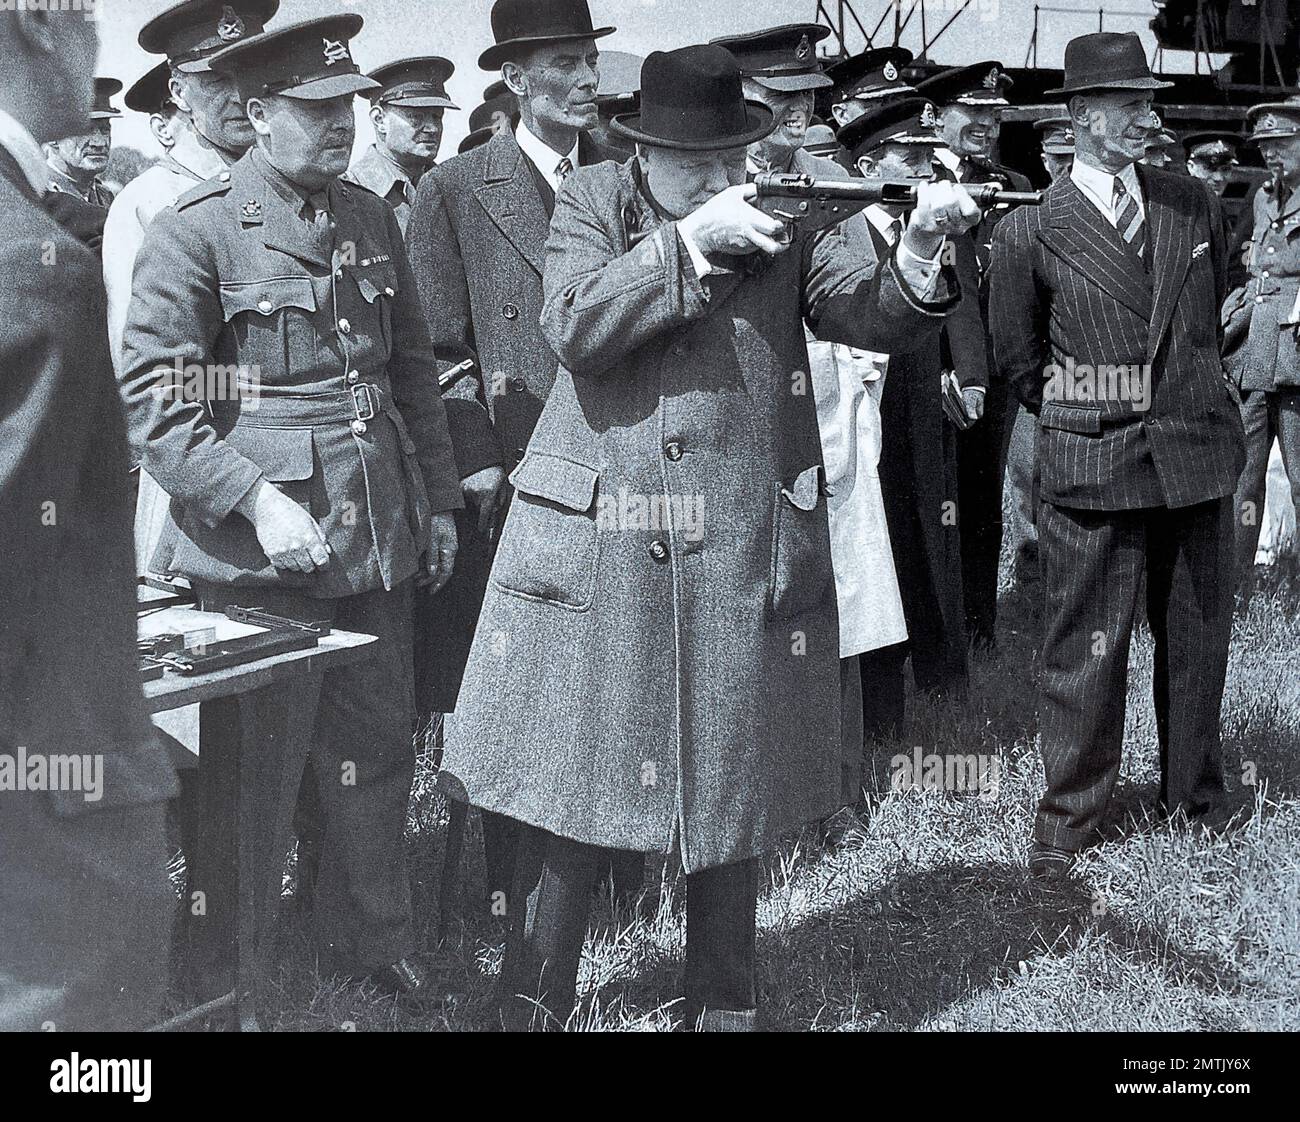 WINSTON CHURCHILL (1874-1955) am 13. Juni 1941 fir9ng eine neue Sten-Waffe, die David Margesson, Außenminister für den 1. Krieg (mit Bowler-Hut), und sein Bodyguard Inspector Walter Thompson rechts beobachteten Stockfoto